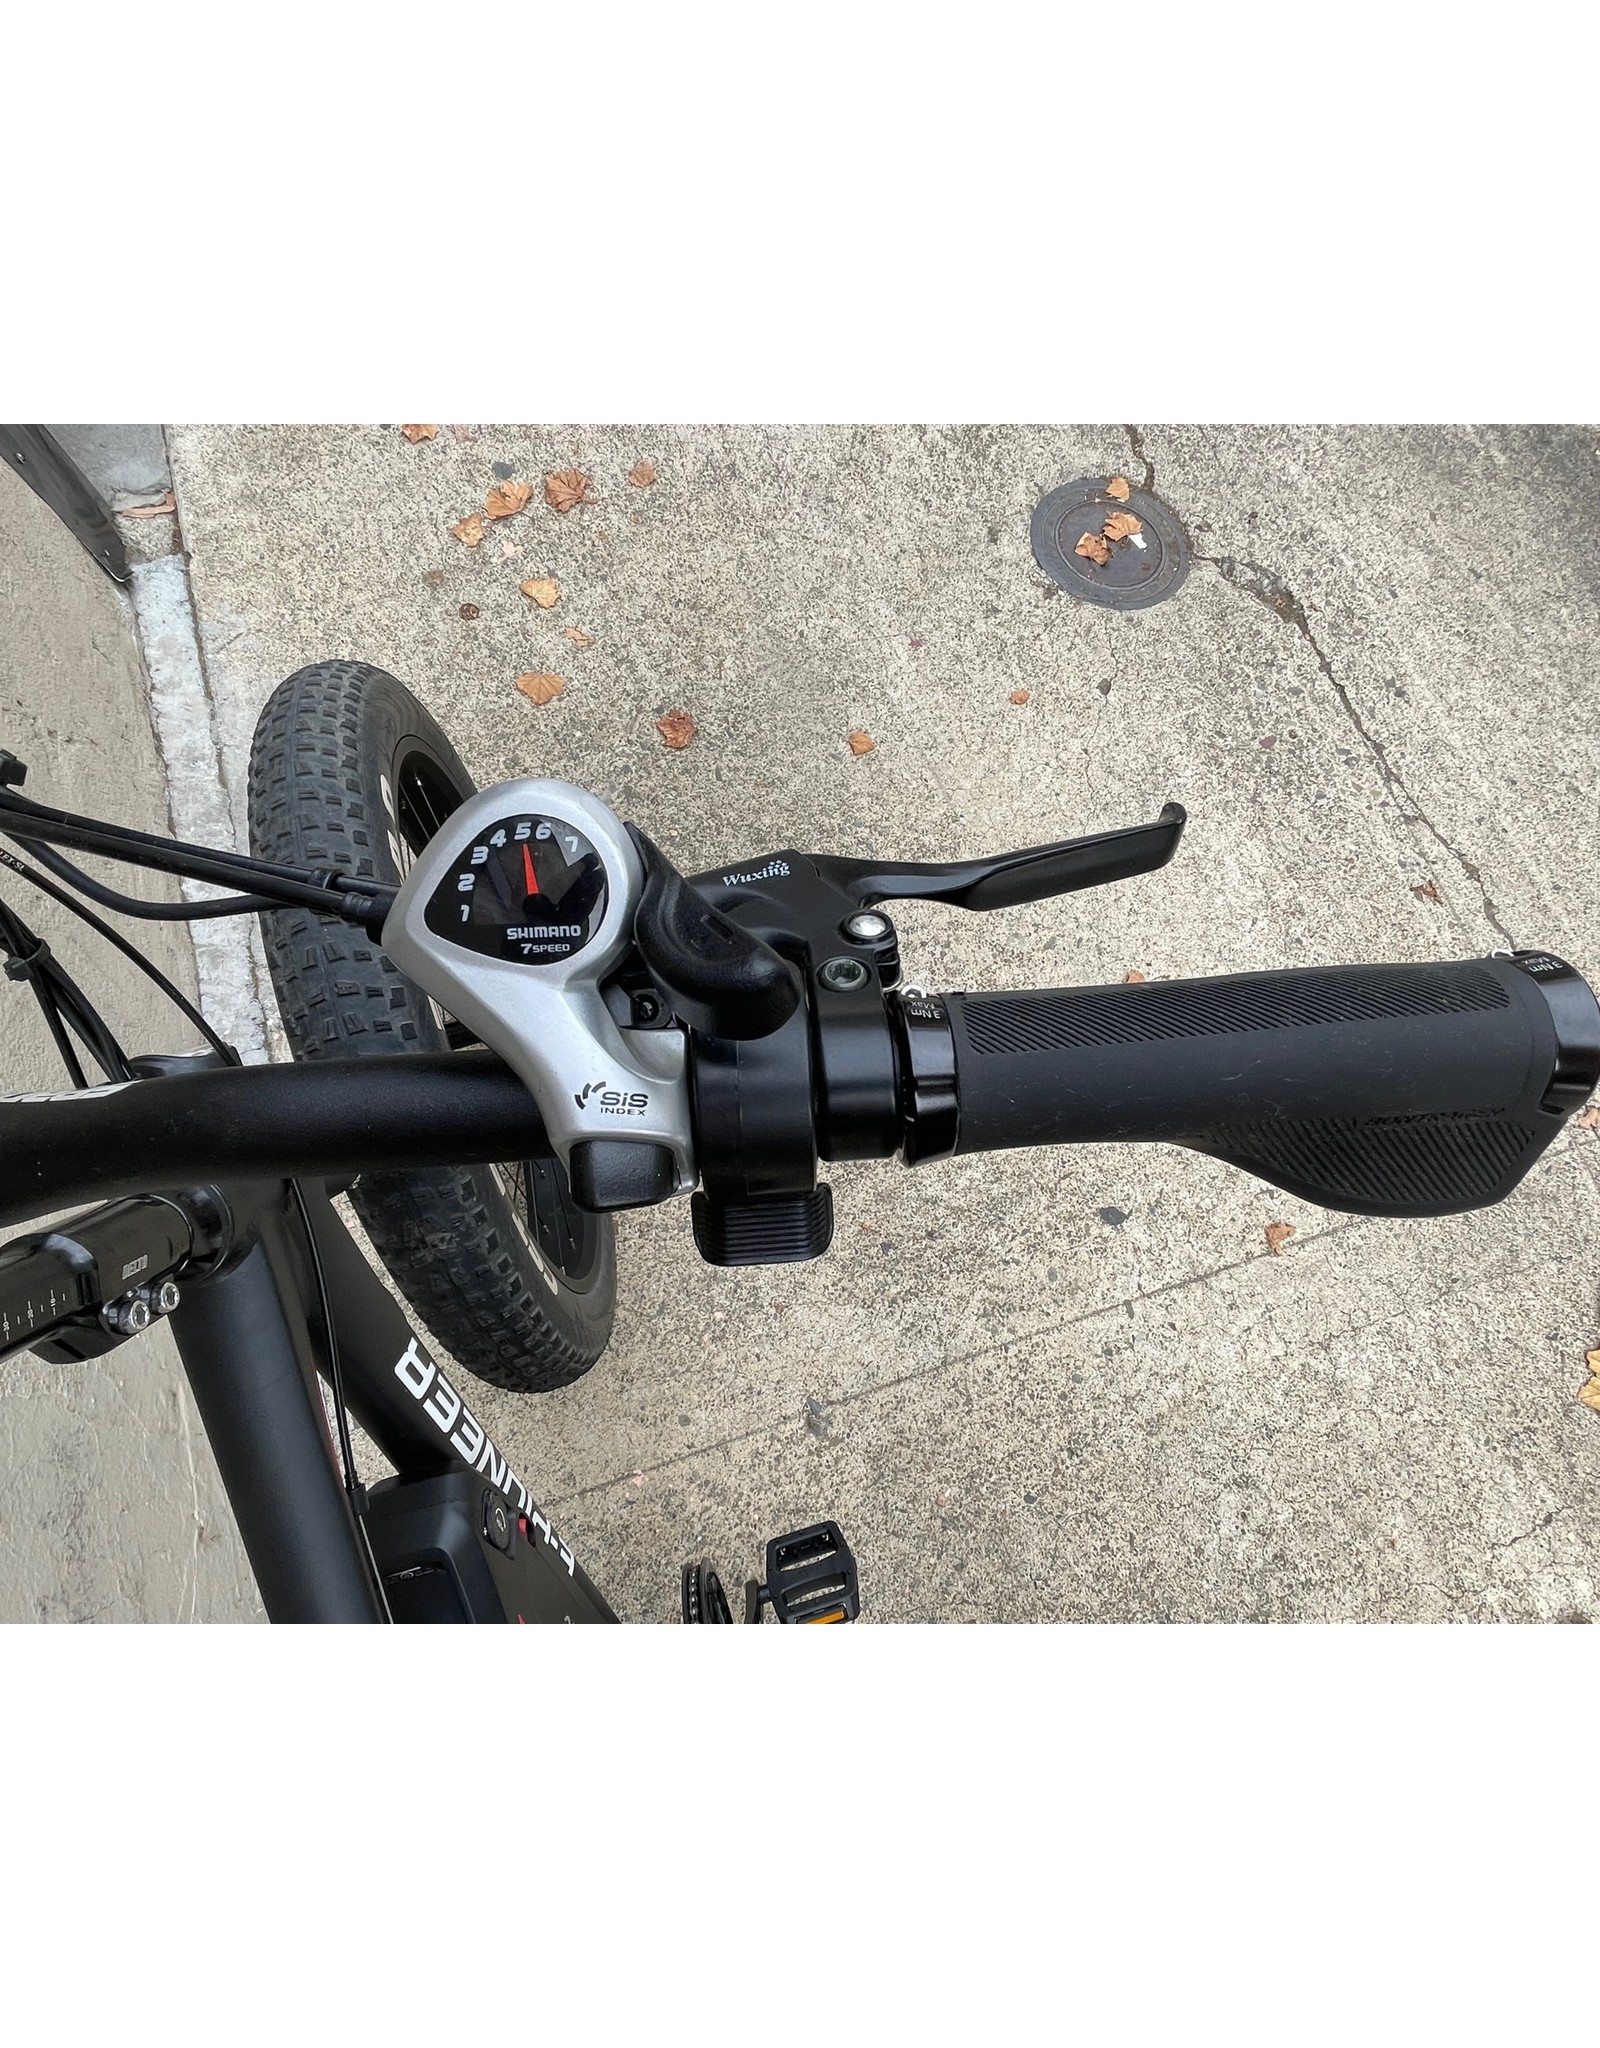 E-Pioneer E-Pioneer ePower Pro XV Electric Bike, 2019, 19.5 Inches, Black